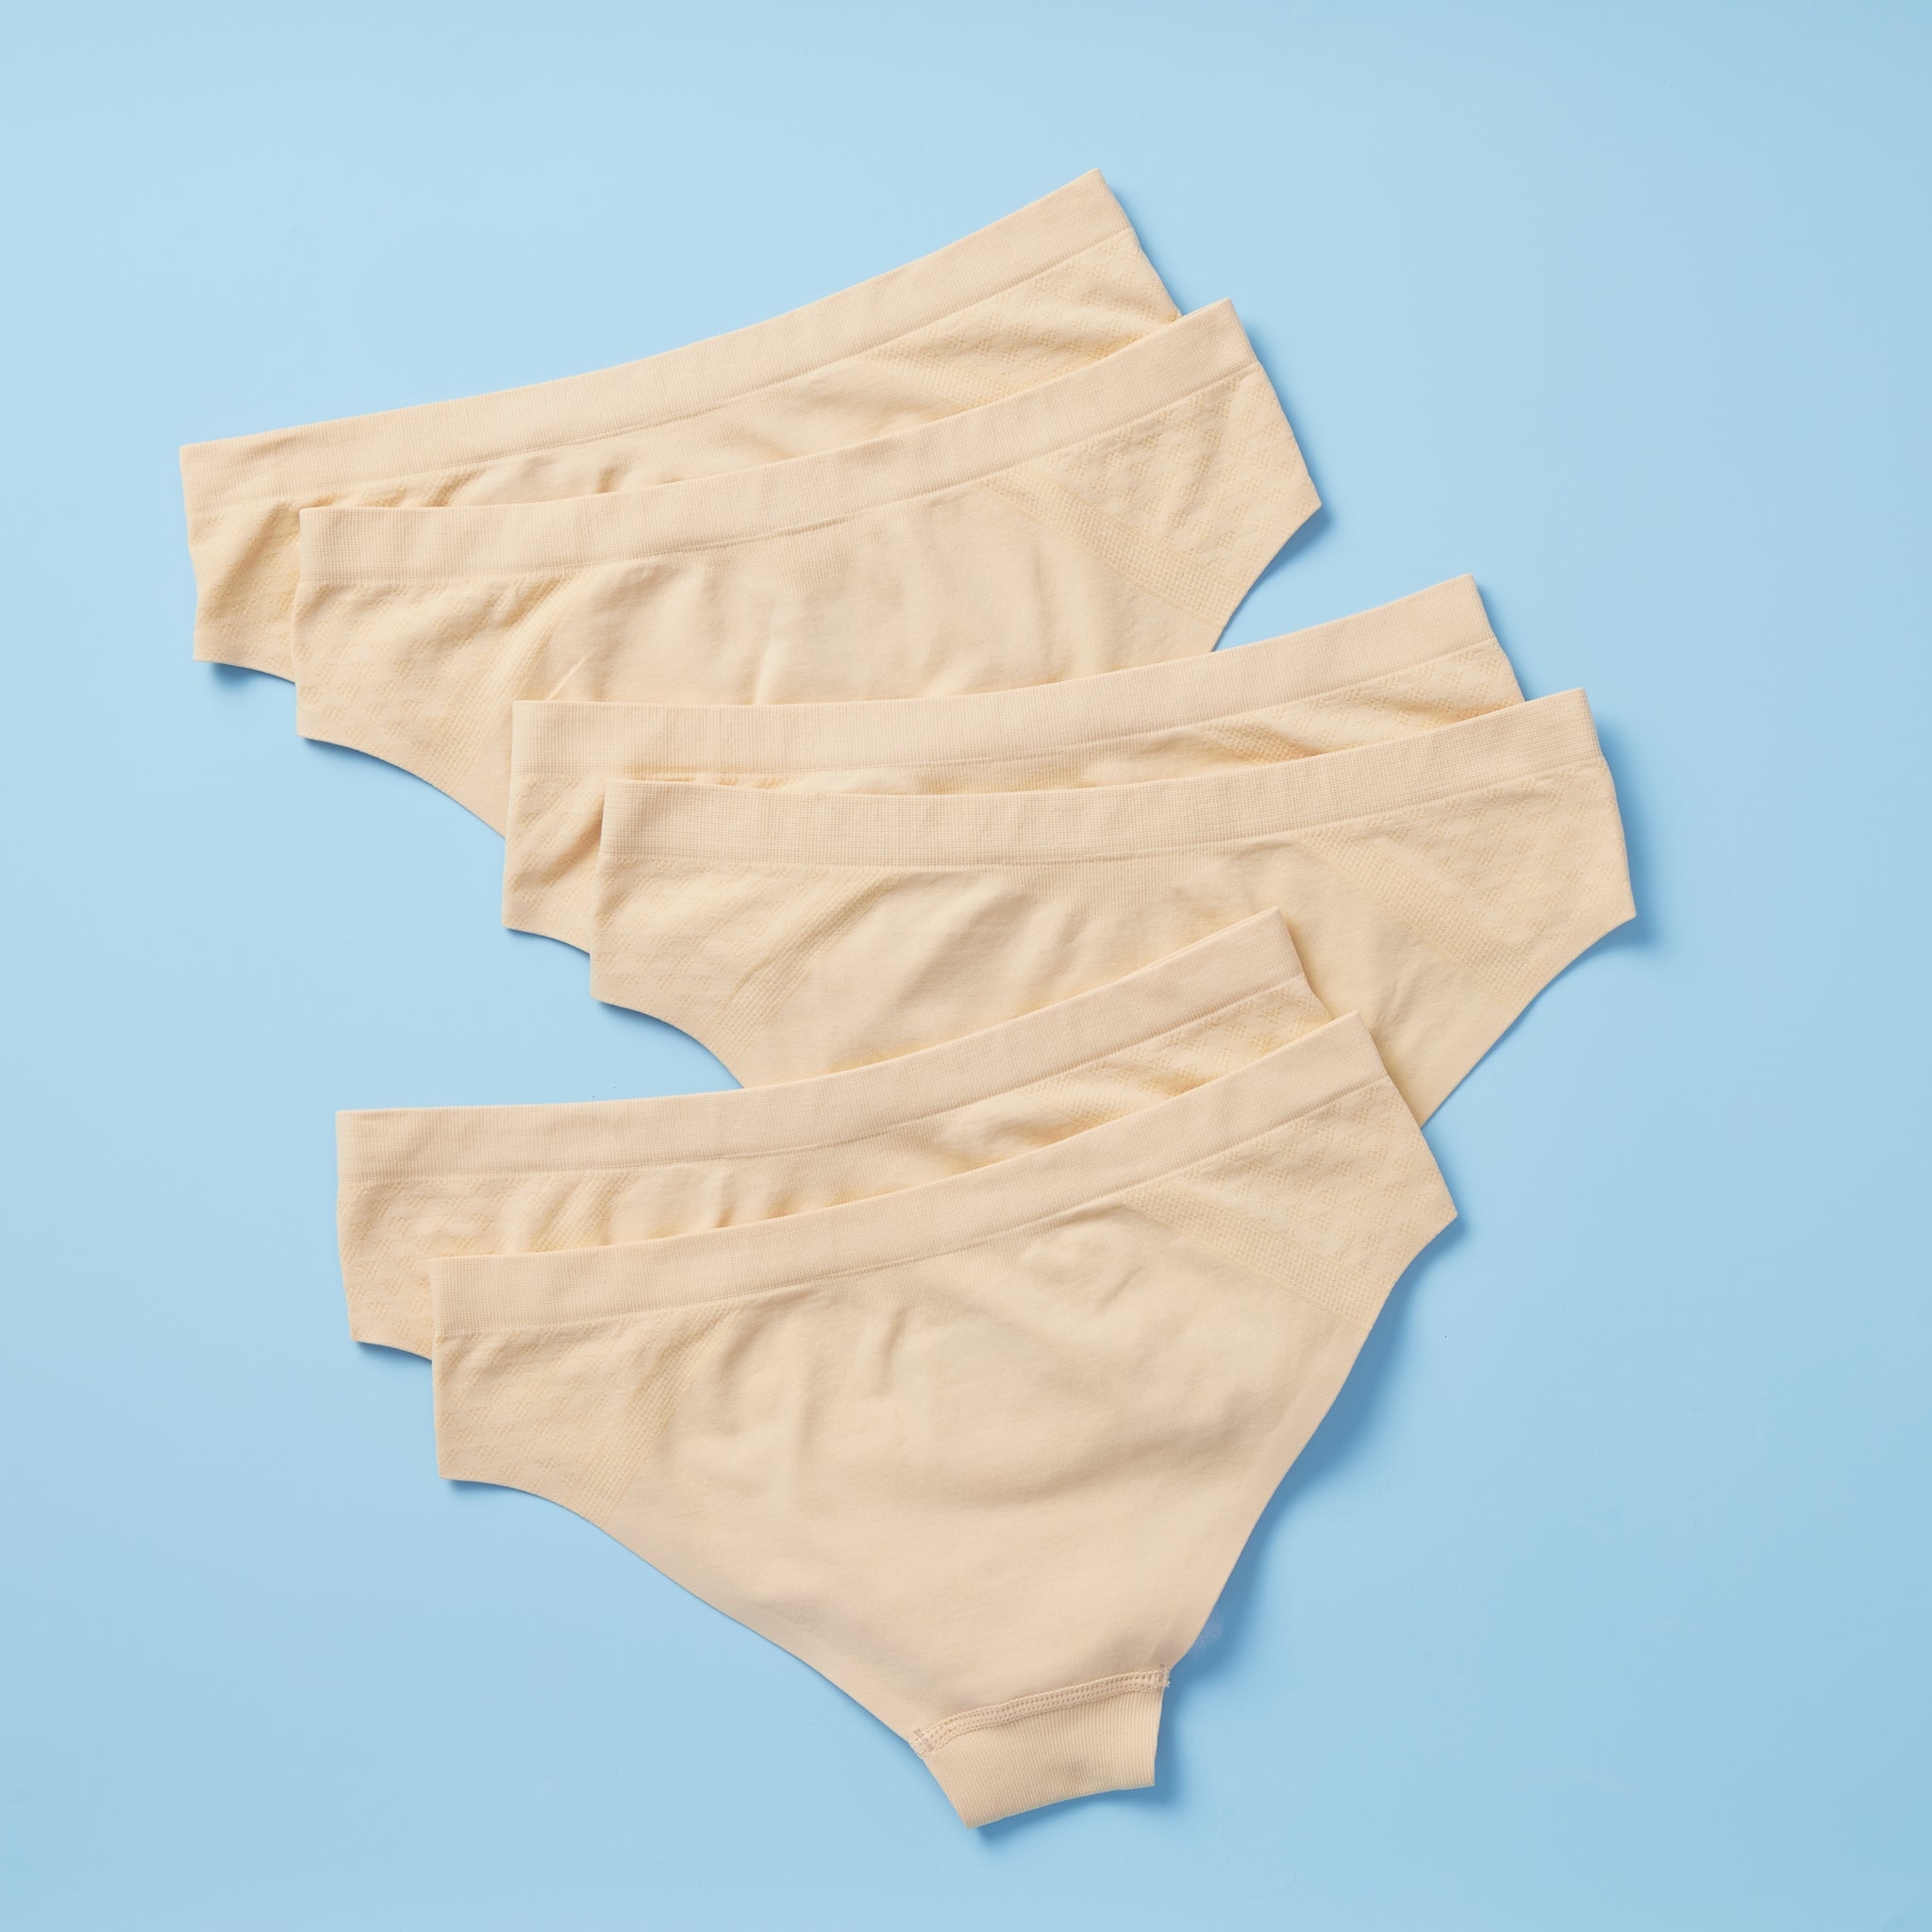 Twistr Seamless Underwear - Yellowberry